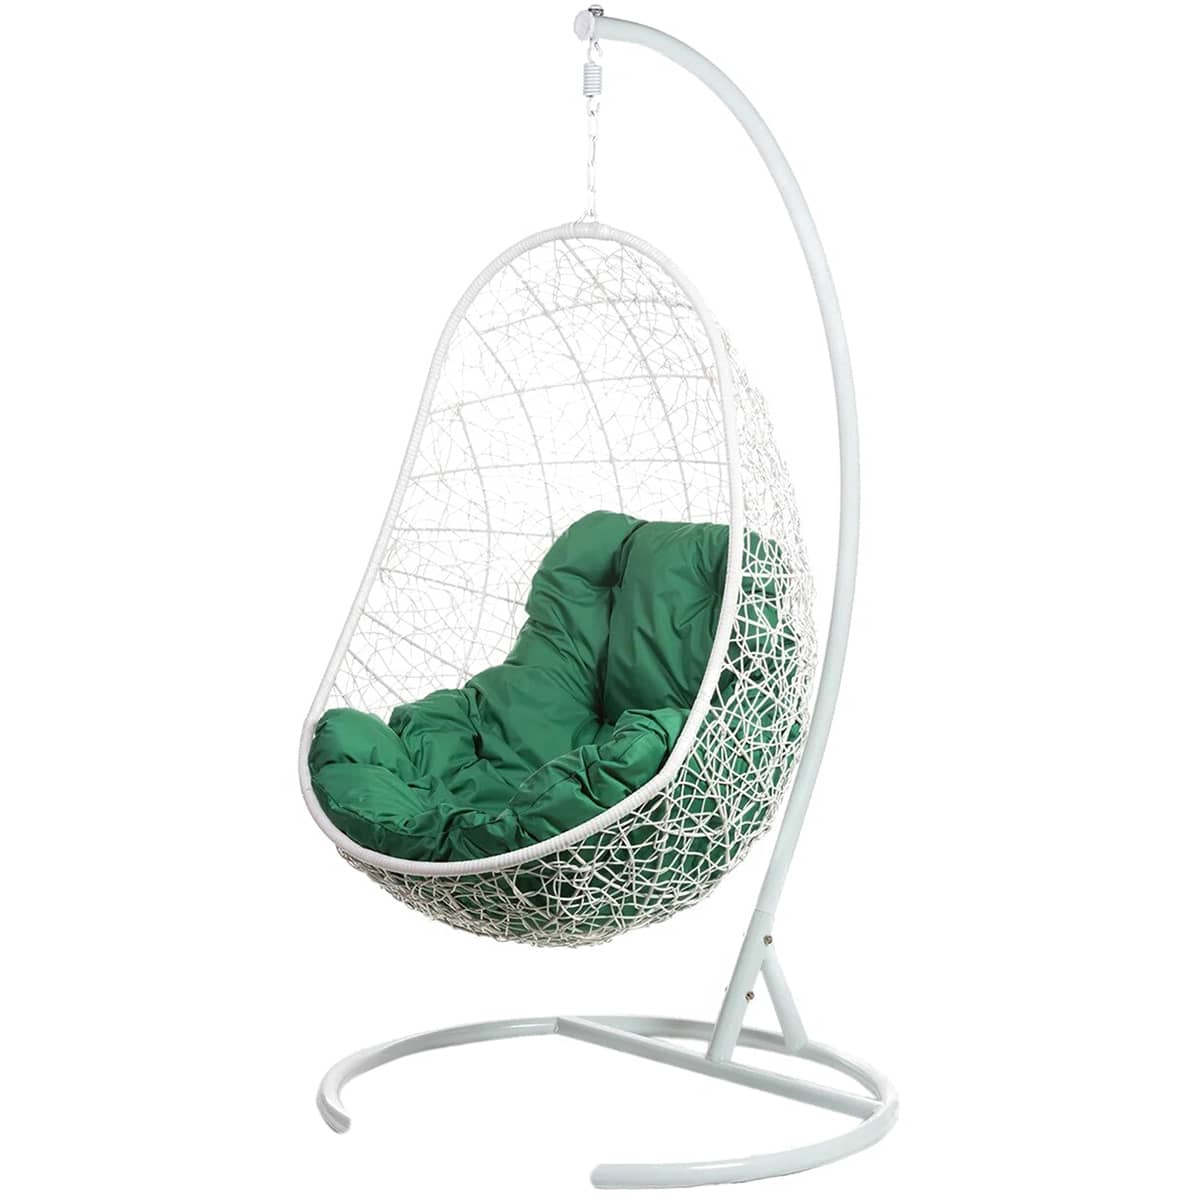 Кресло подвесное FP 0227 зеленая подушка - изображение 1